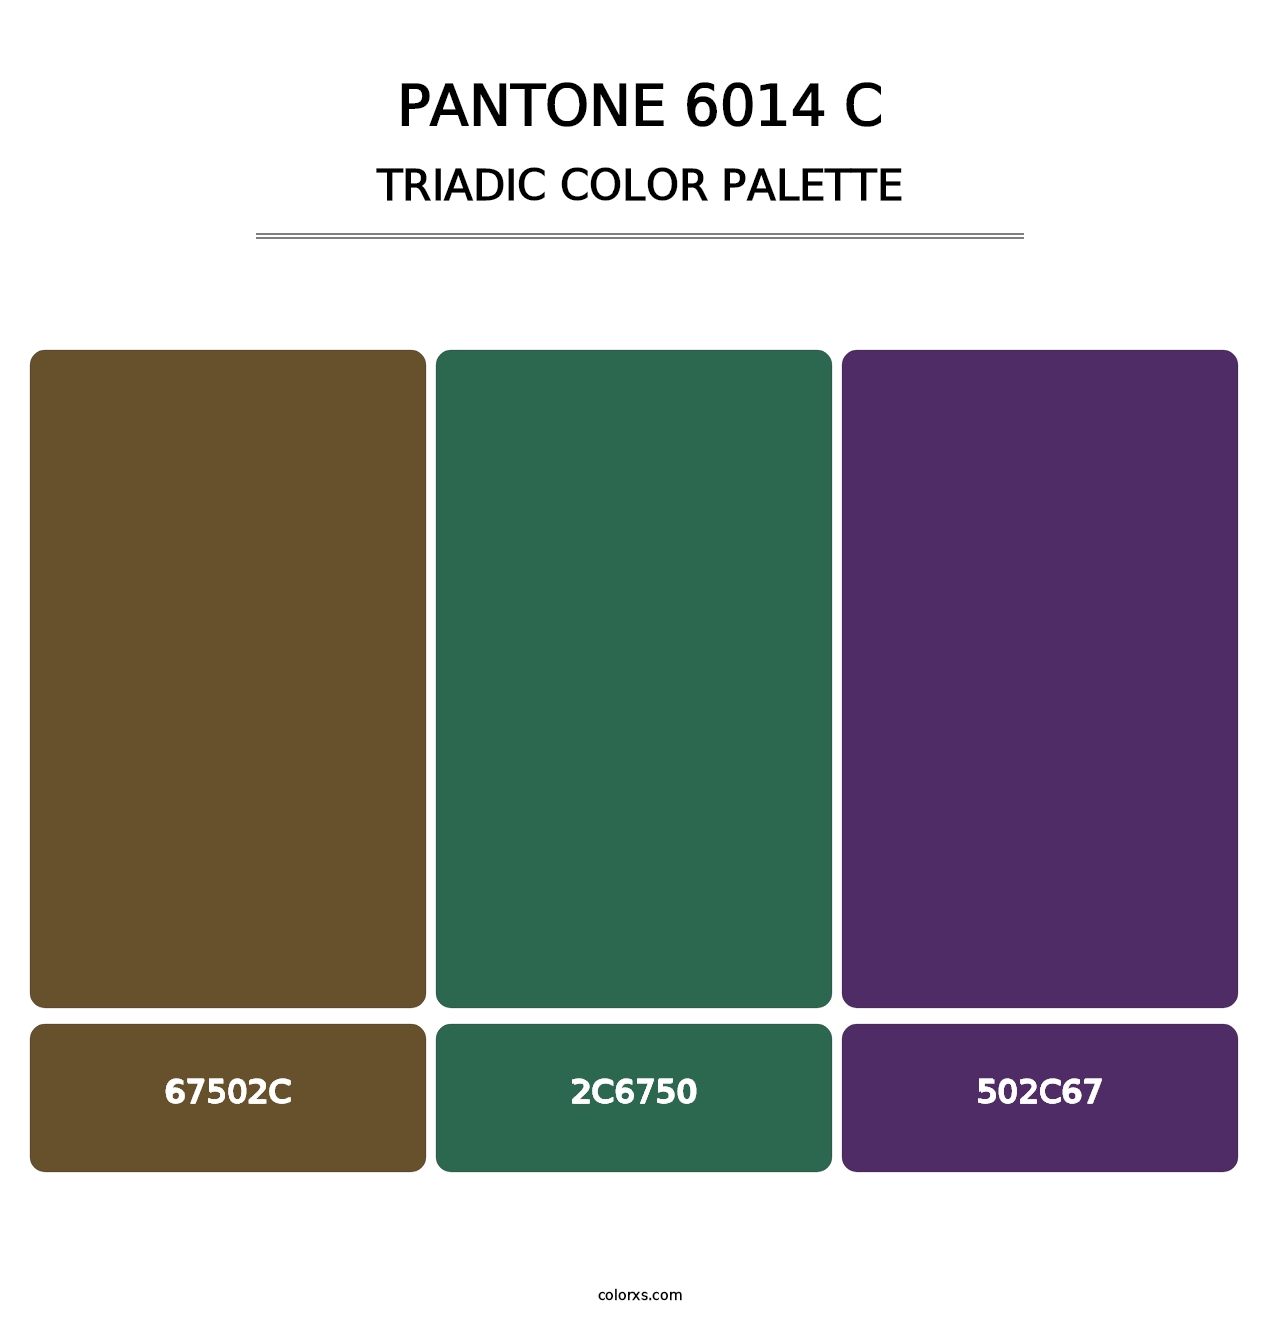 PANTONE 6014 C - Triadic Color Palette